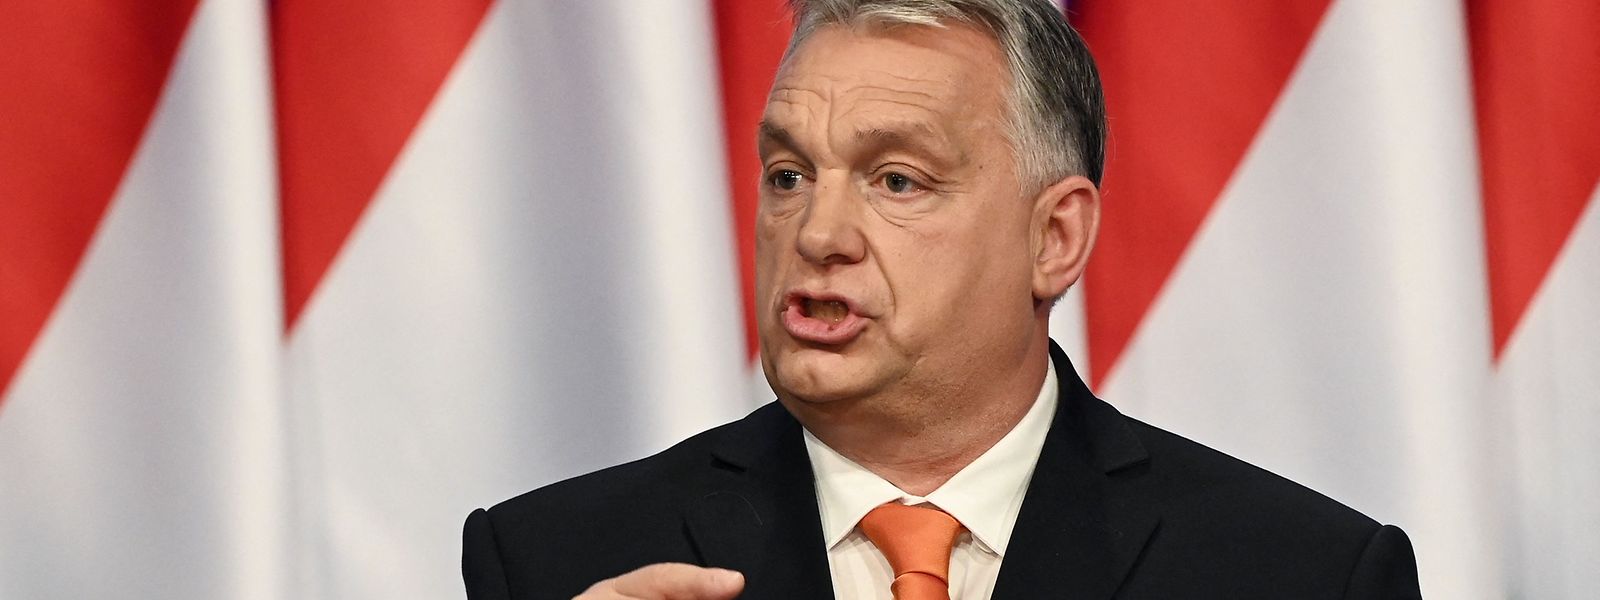 Ungarns Premierminister Viktor Orban eröffnet den Wahlkampf seiner Fidesz-Partei mit EU-feindlichen Sprüchen.